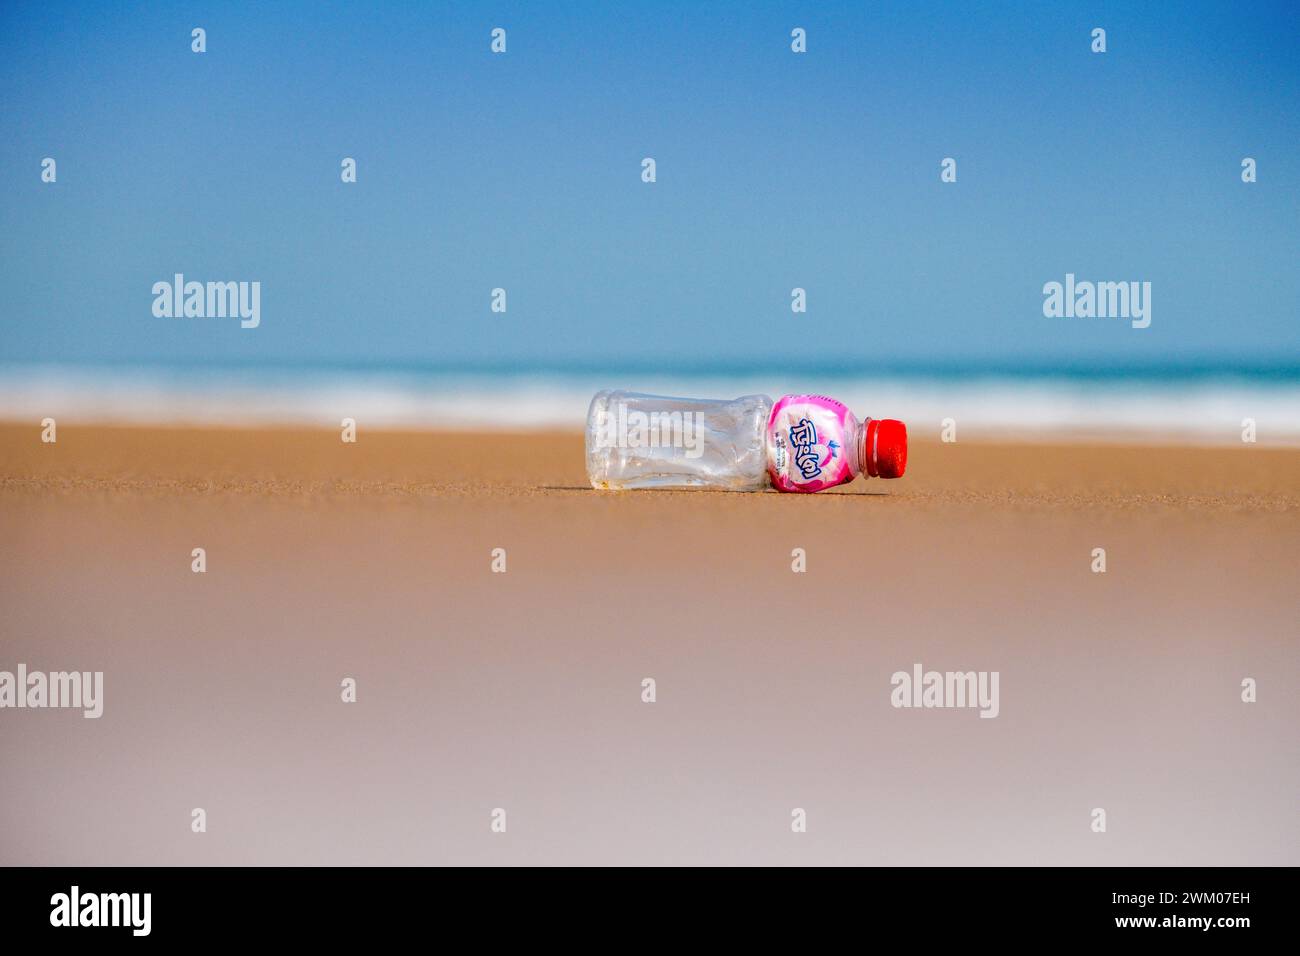 Une bouteille de boisson en plastique sur une plage autrement déserte sur la côte est de l'Inde Banque D'Images